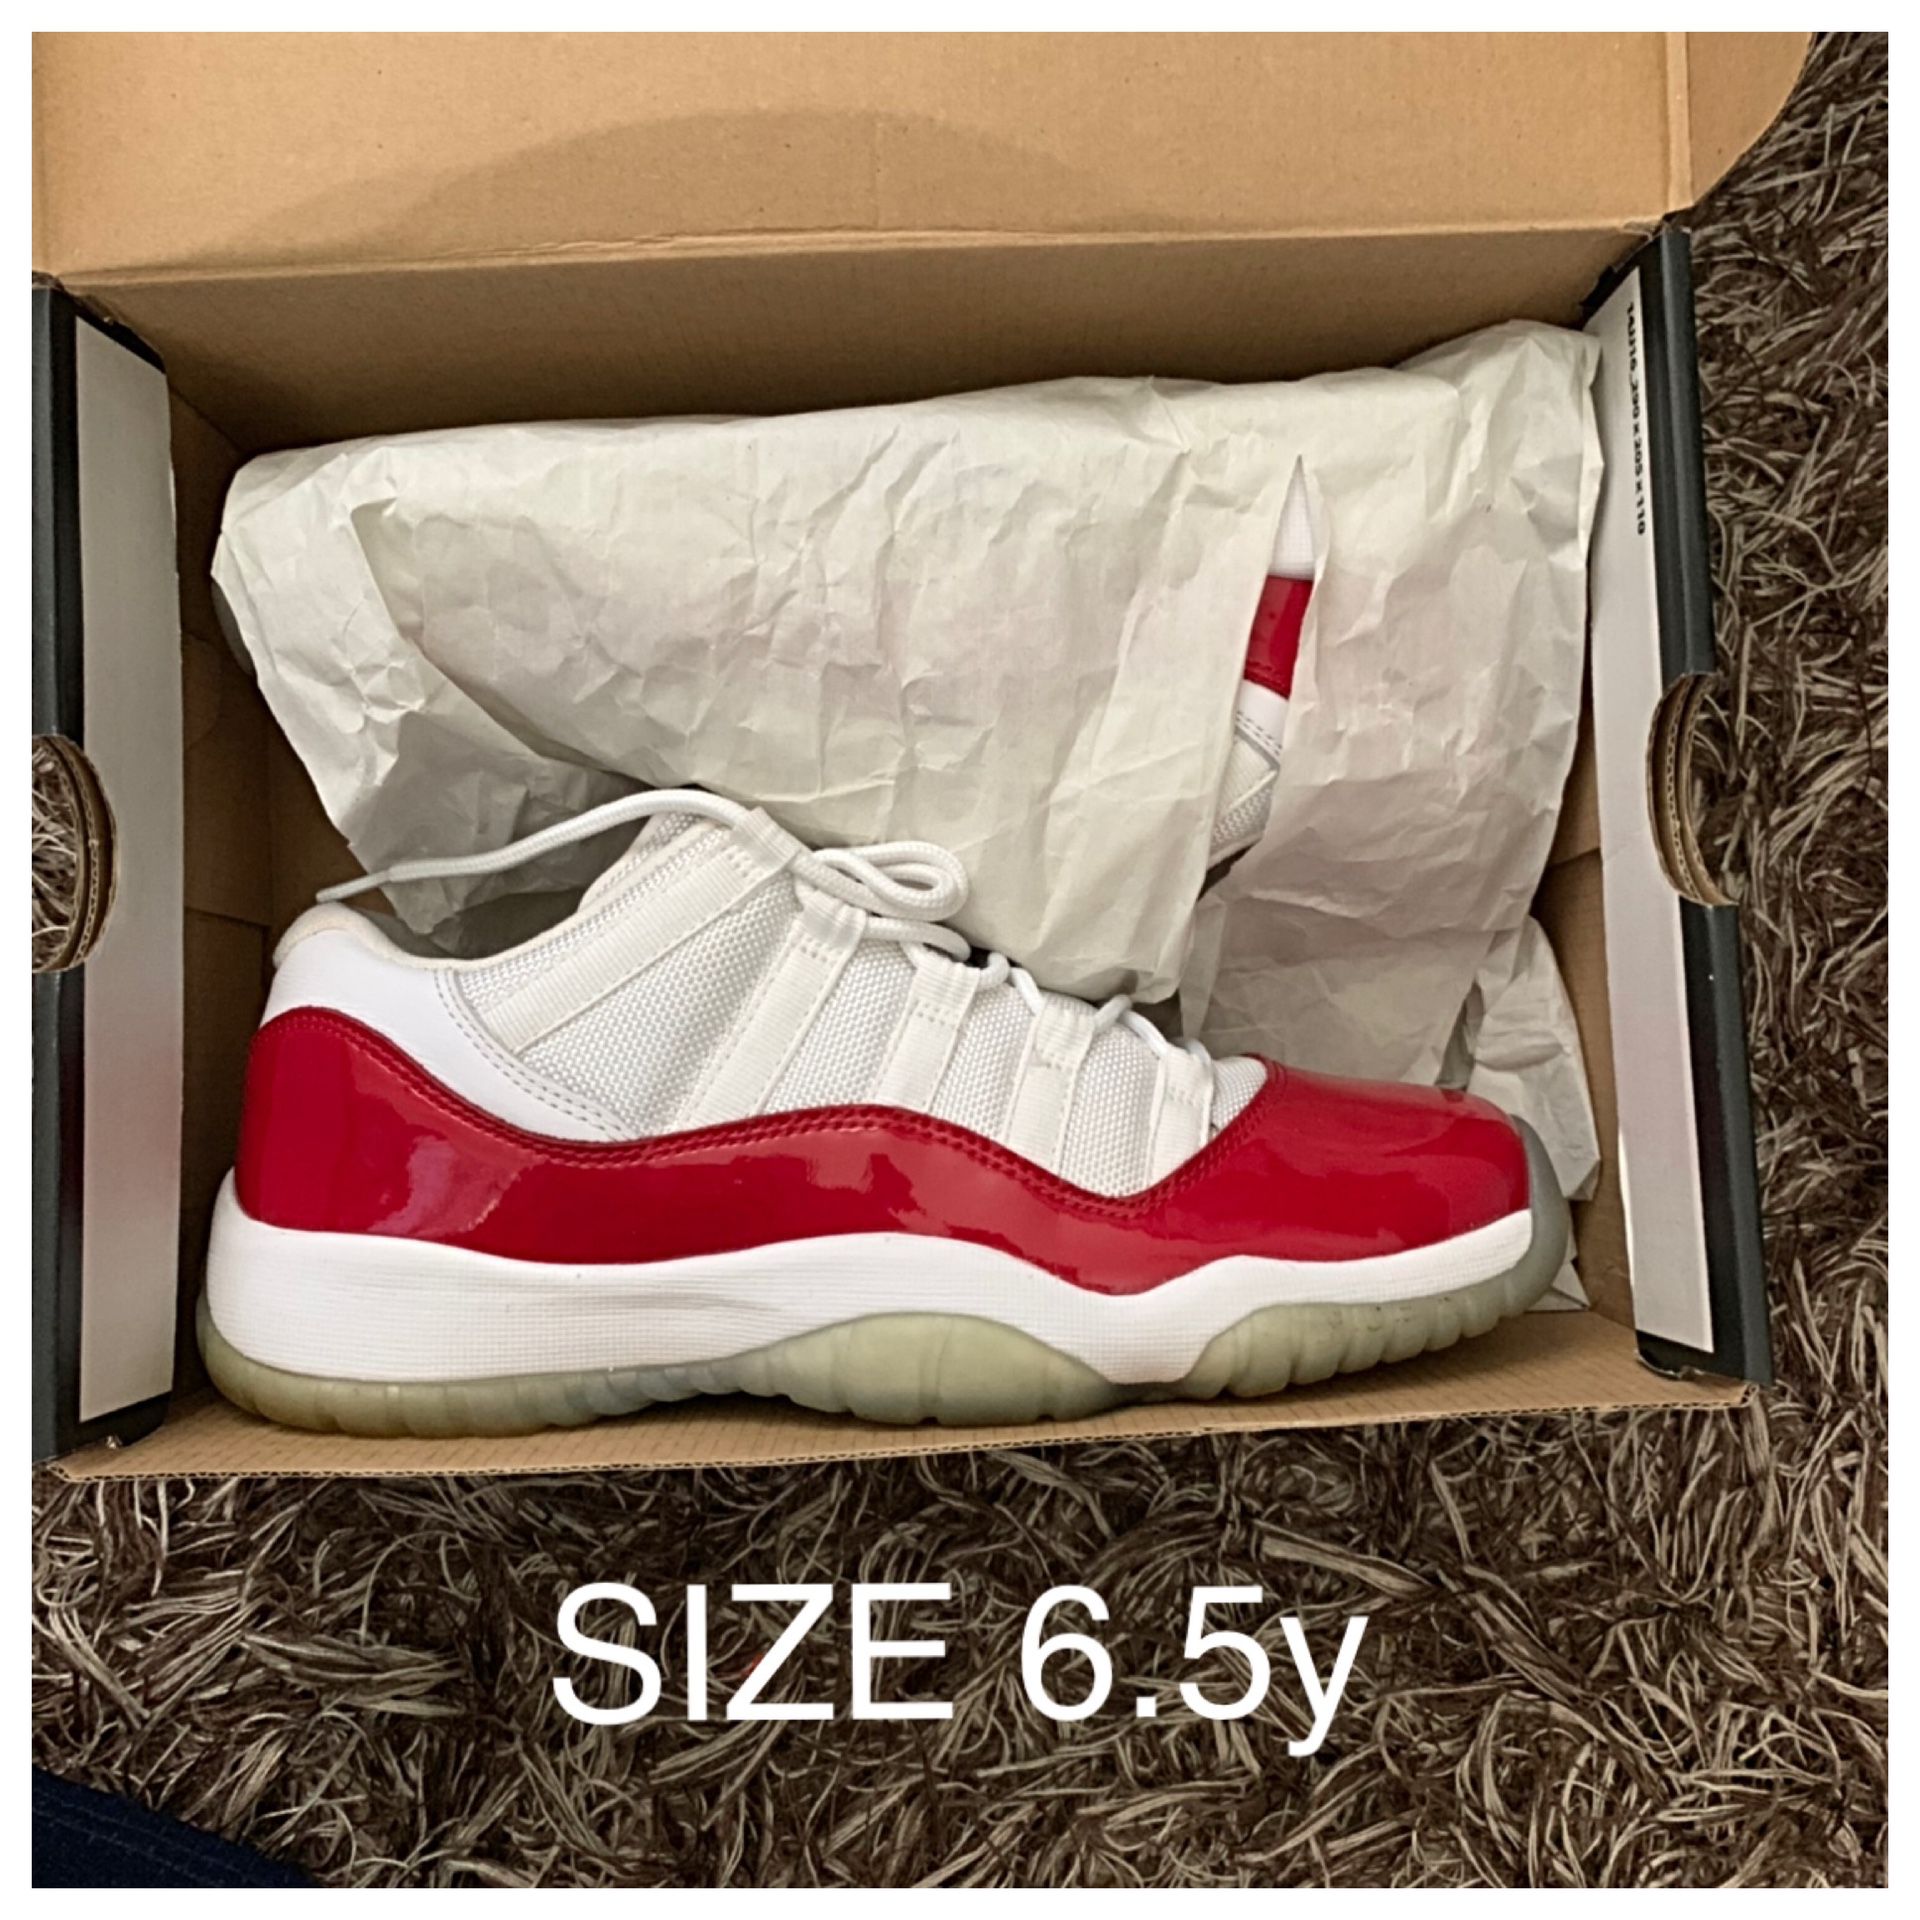 Jordan 11s size 6.5